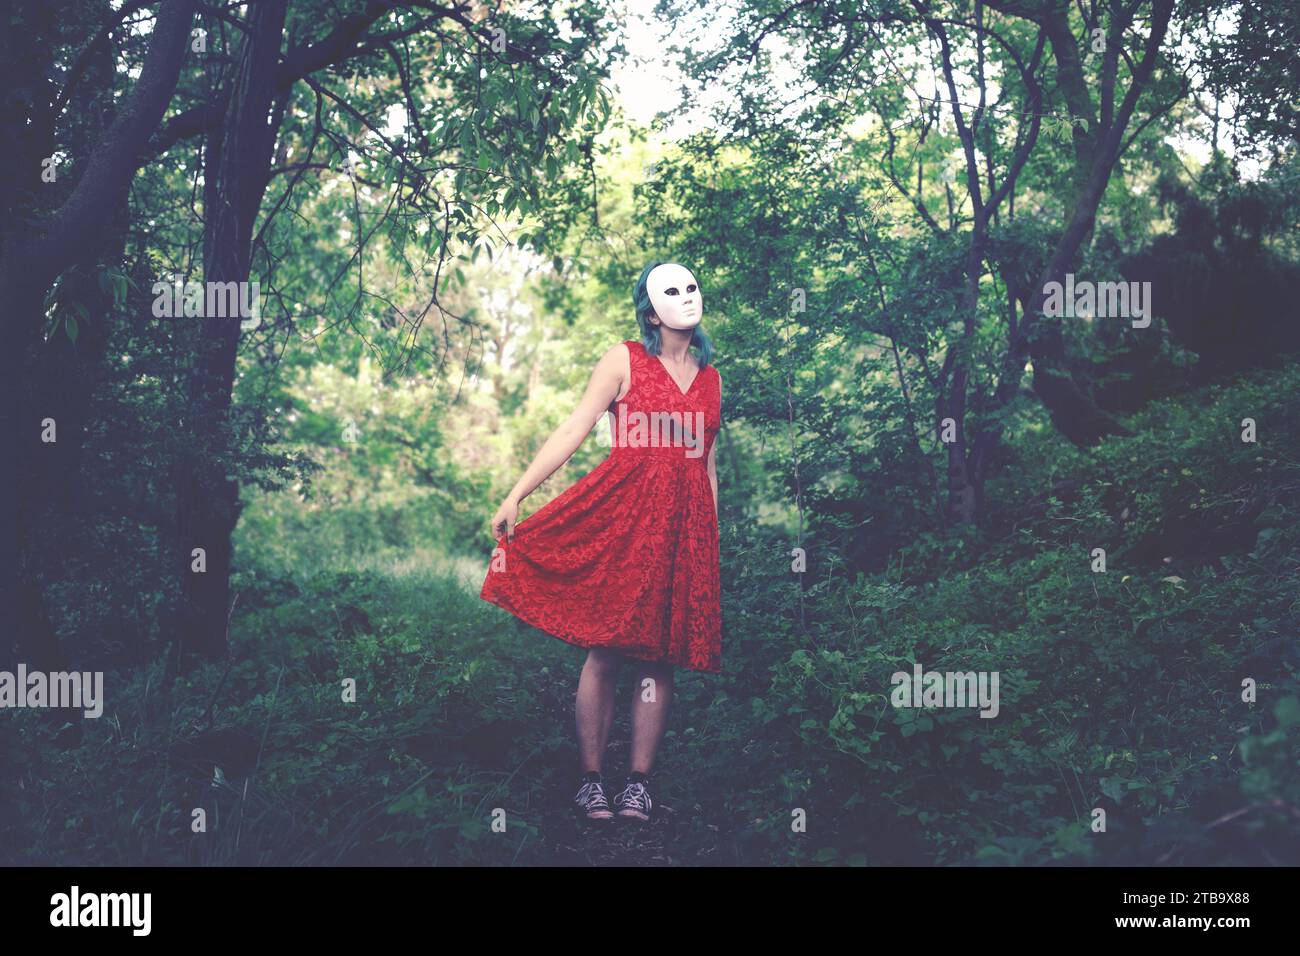 donna con maschera sul viso e abito rosso che balla in una foresta, concetto astratto Foto Stock